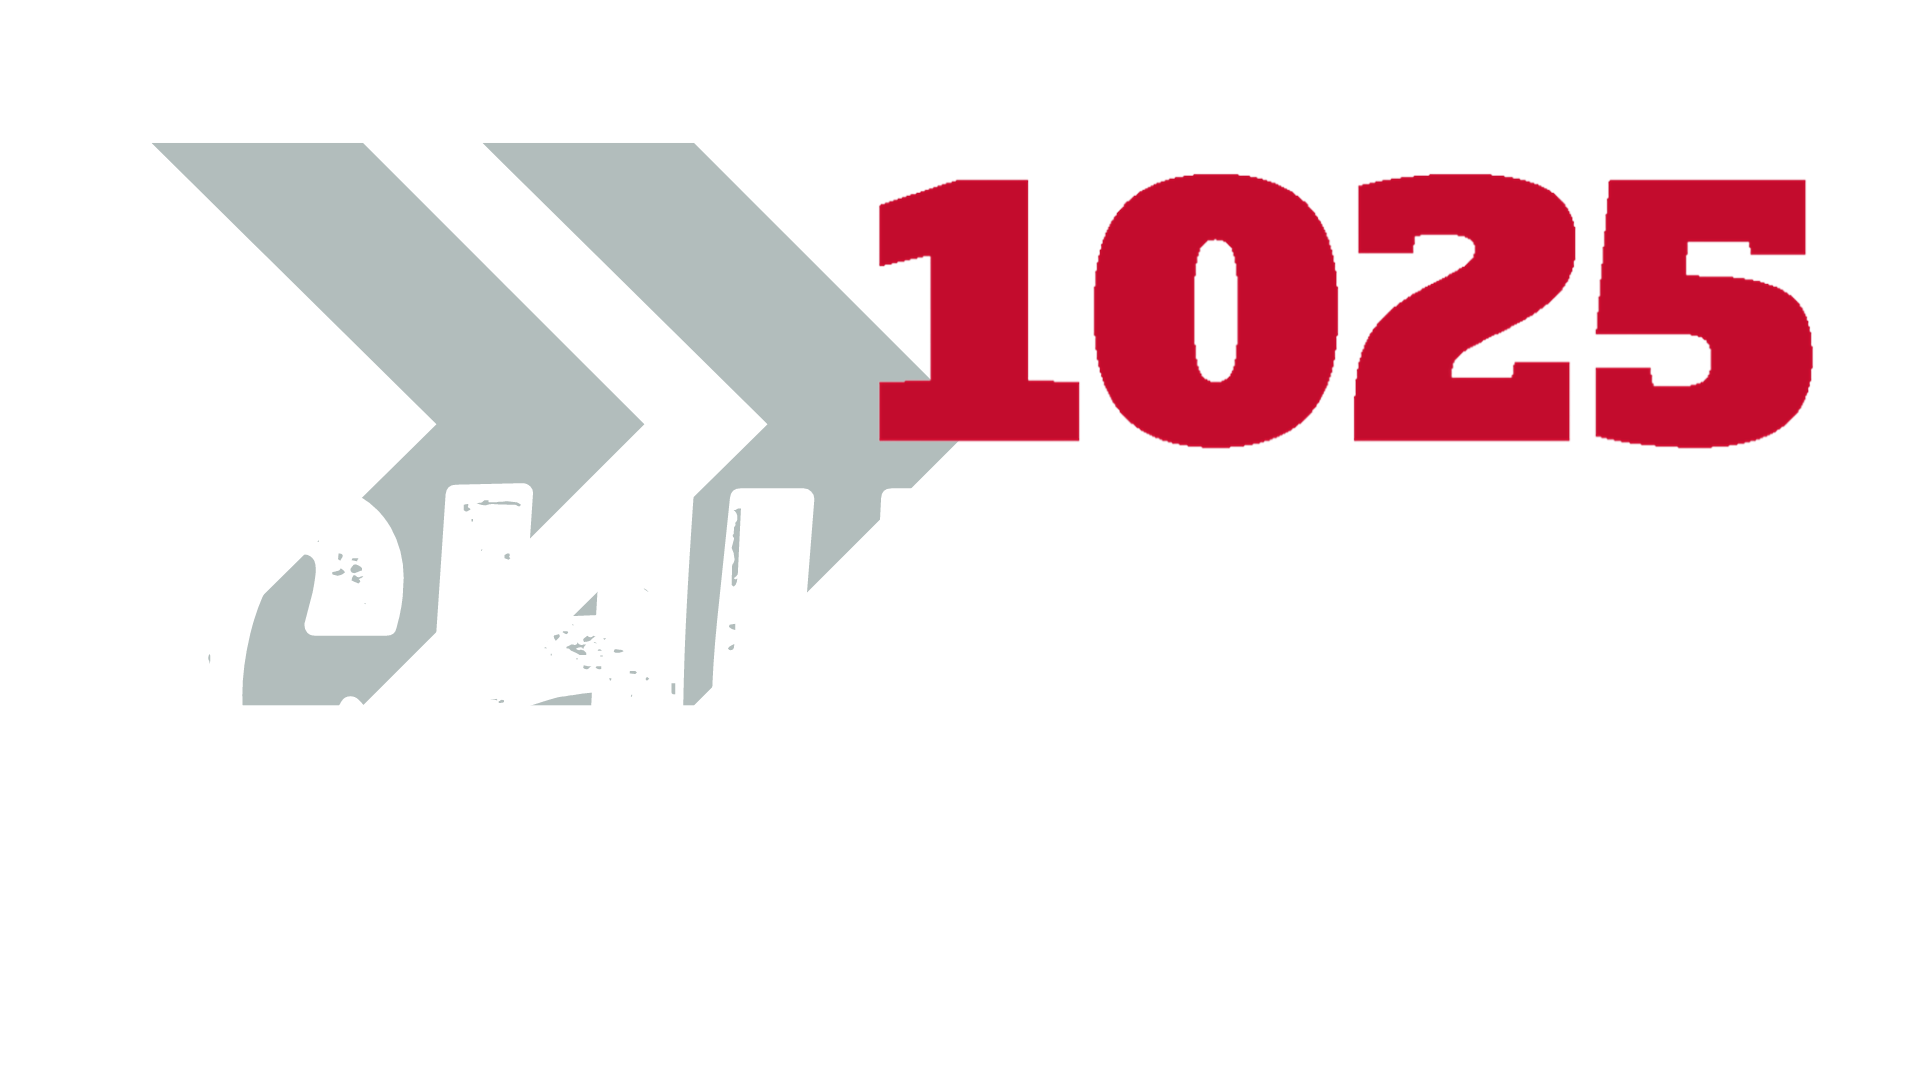 1025 CHURCH